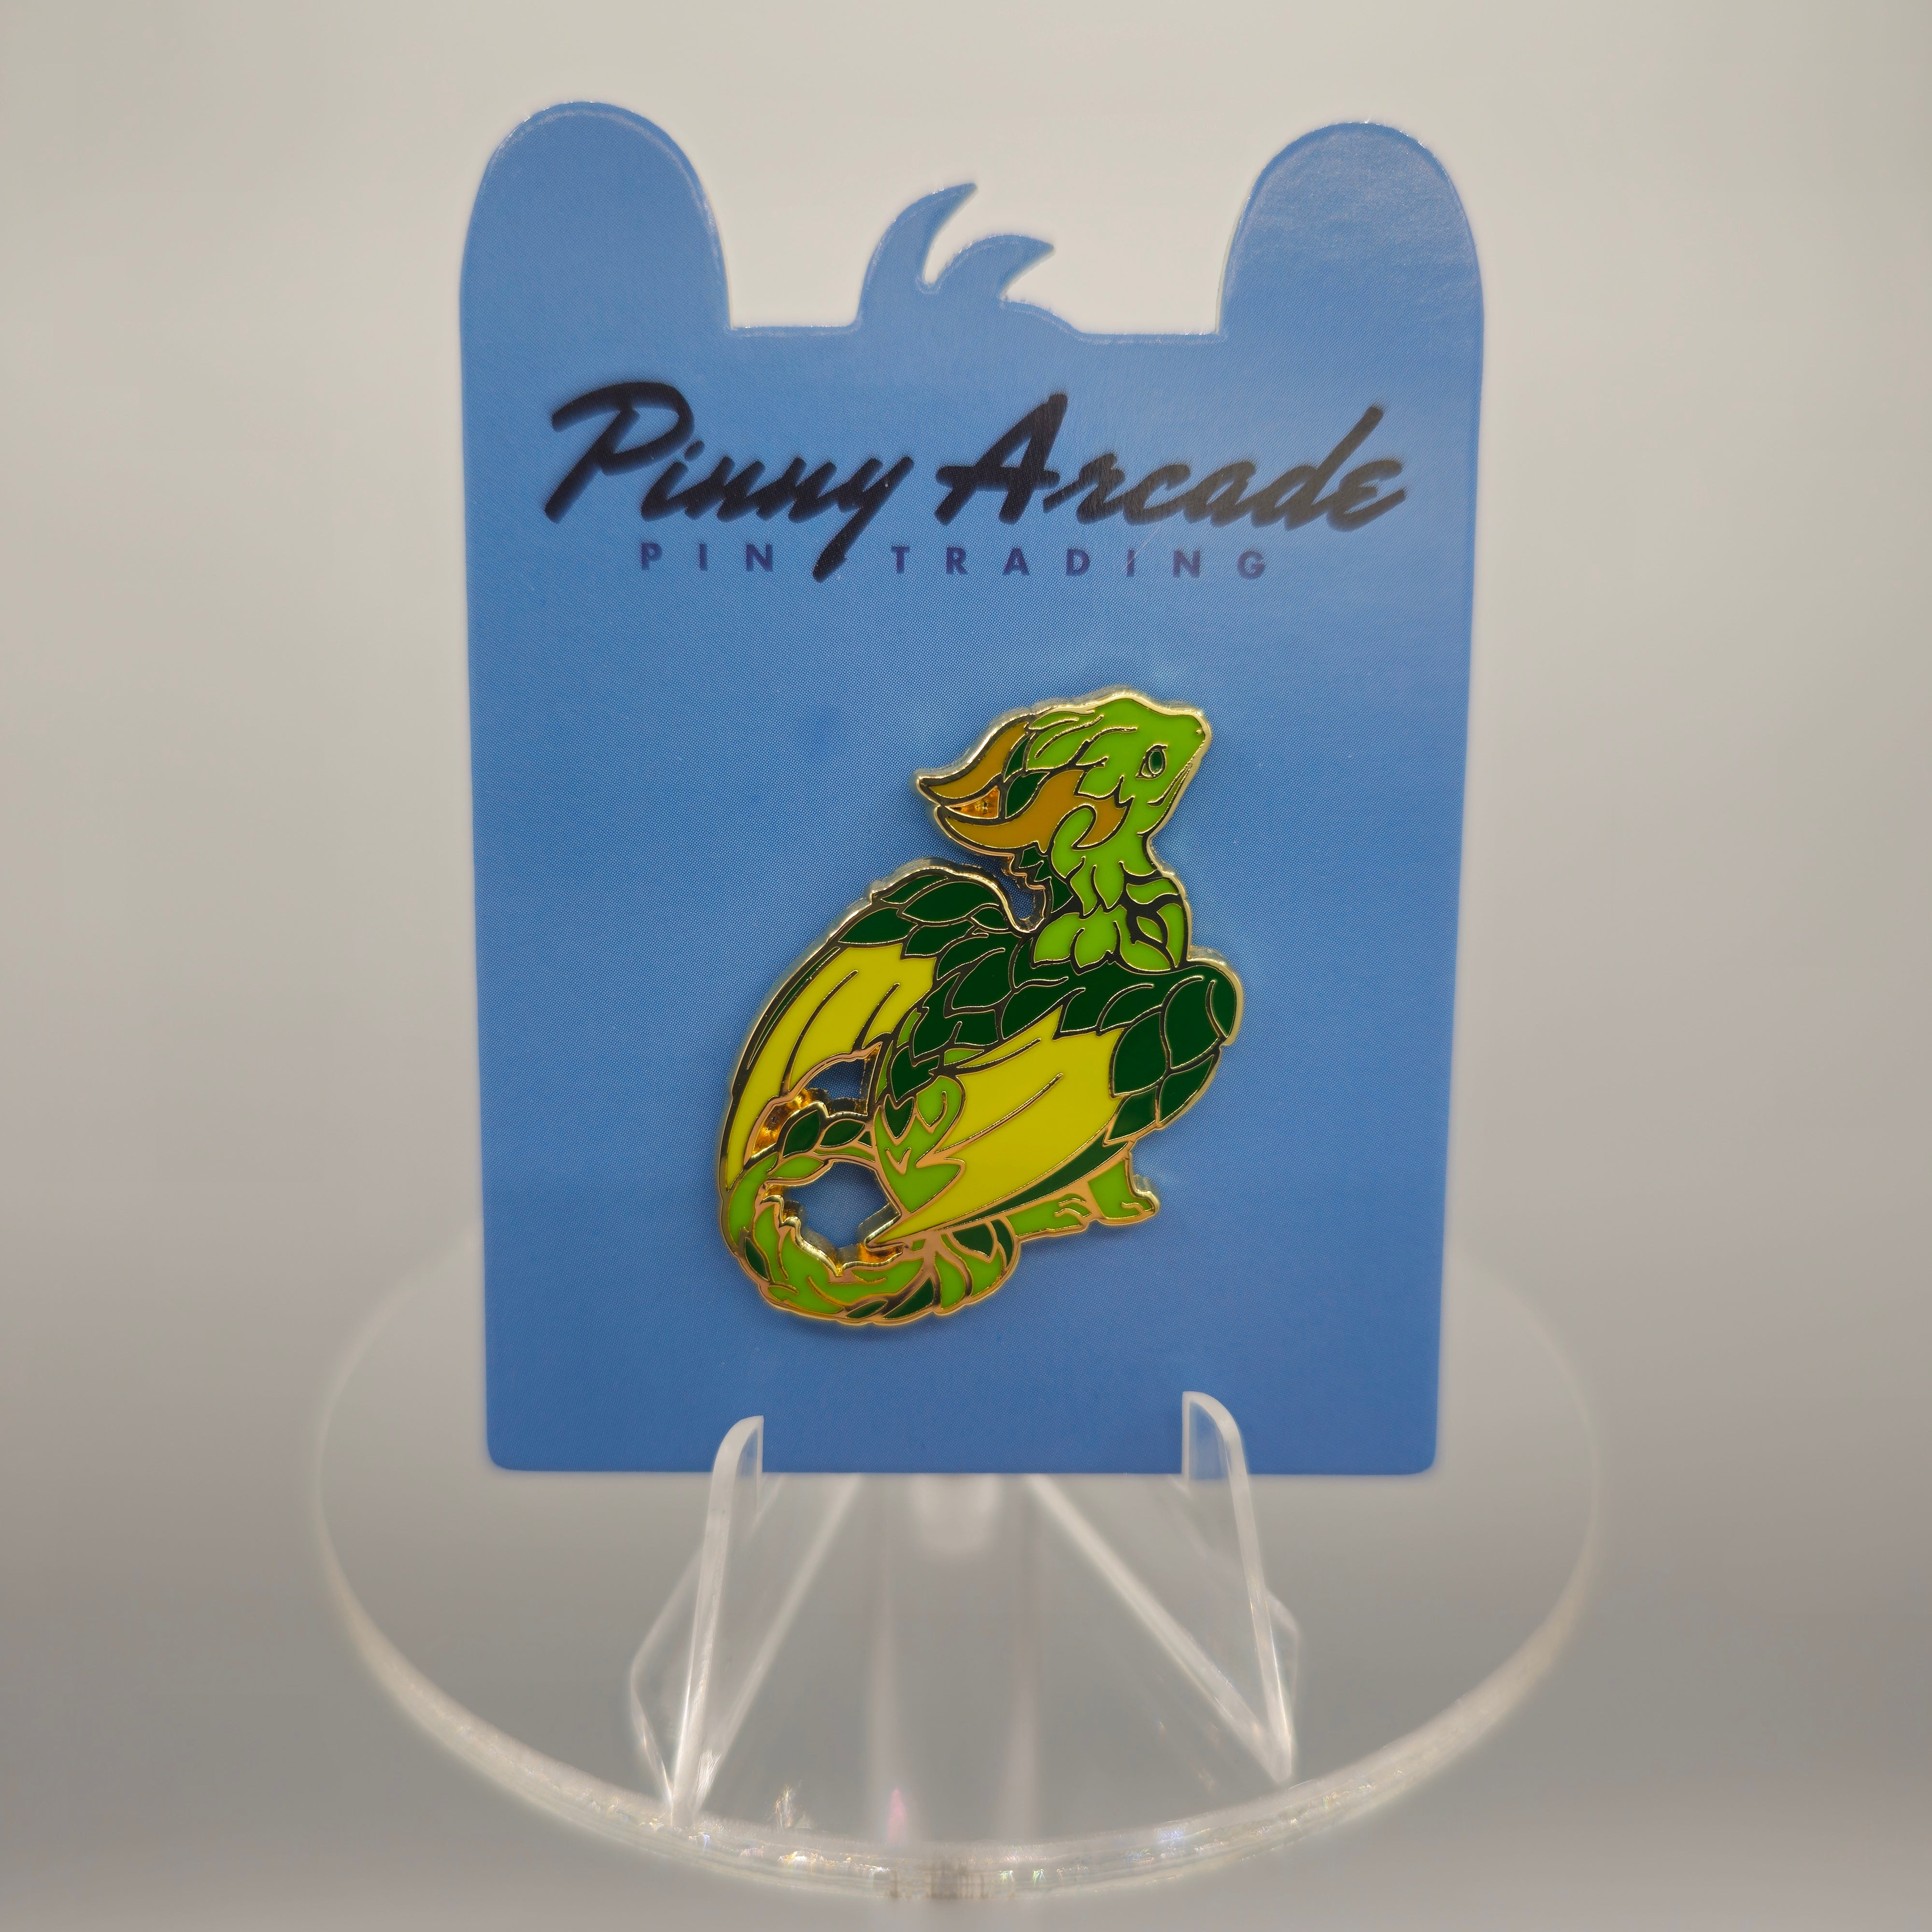 Pinny Arcade Pins - Green Baby Dragon